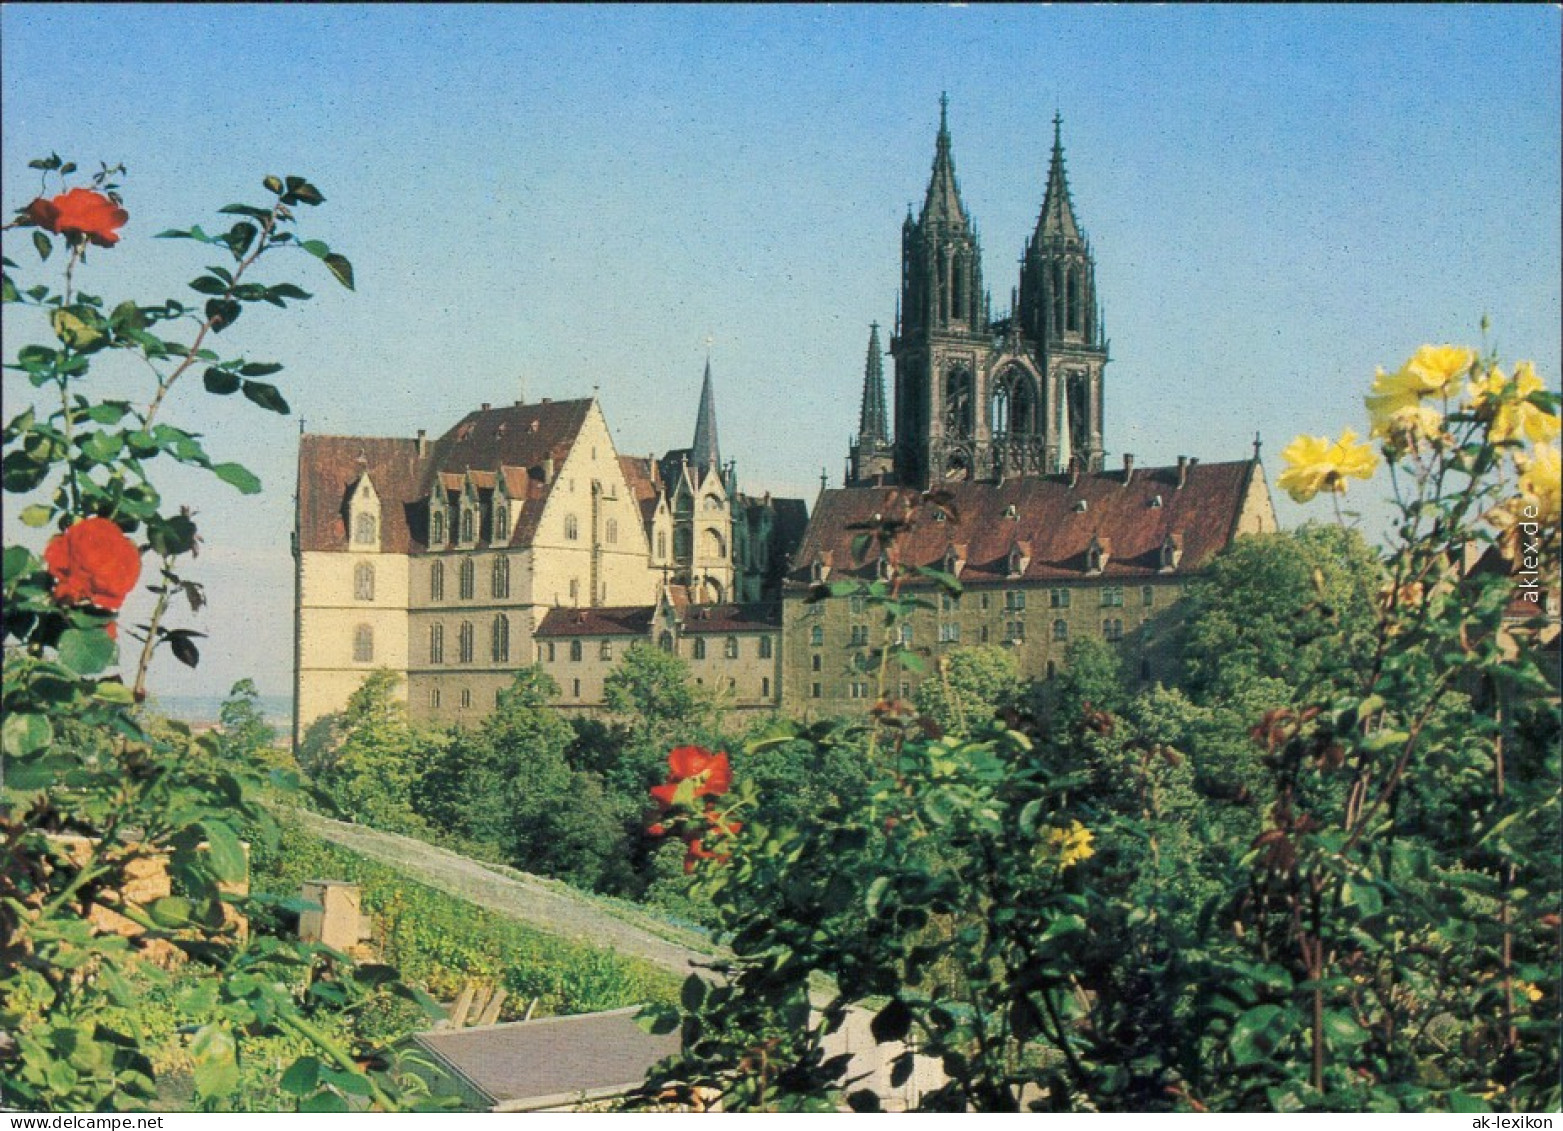 Ansichtskarte Meißen Schloss Albrechtsburg Und Dom 1990 - Meissen